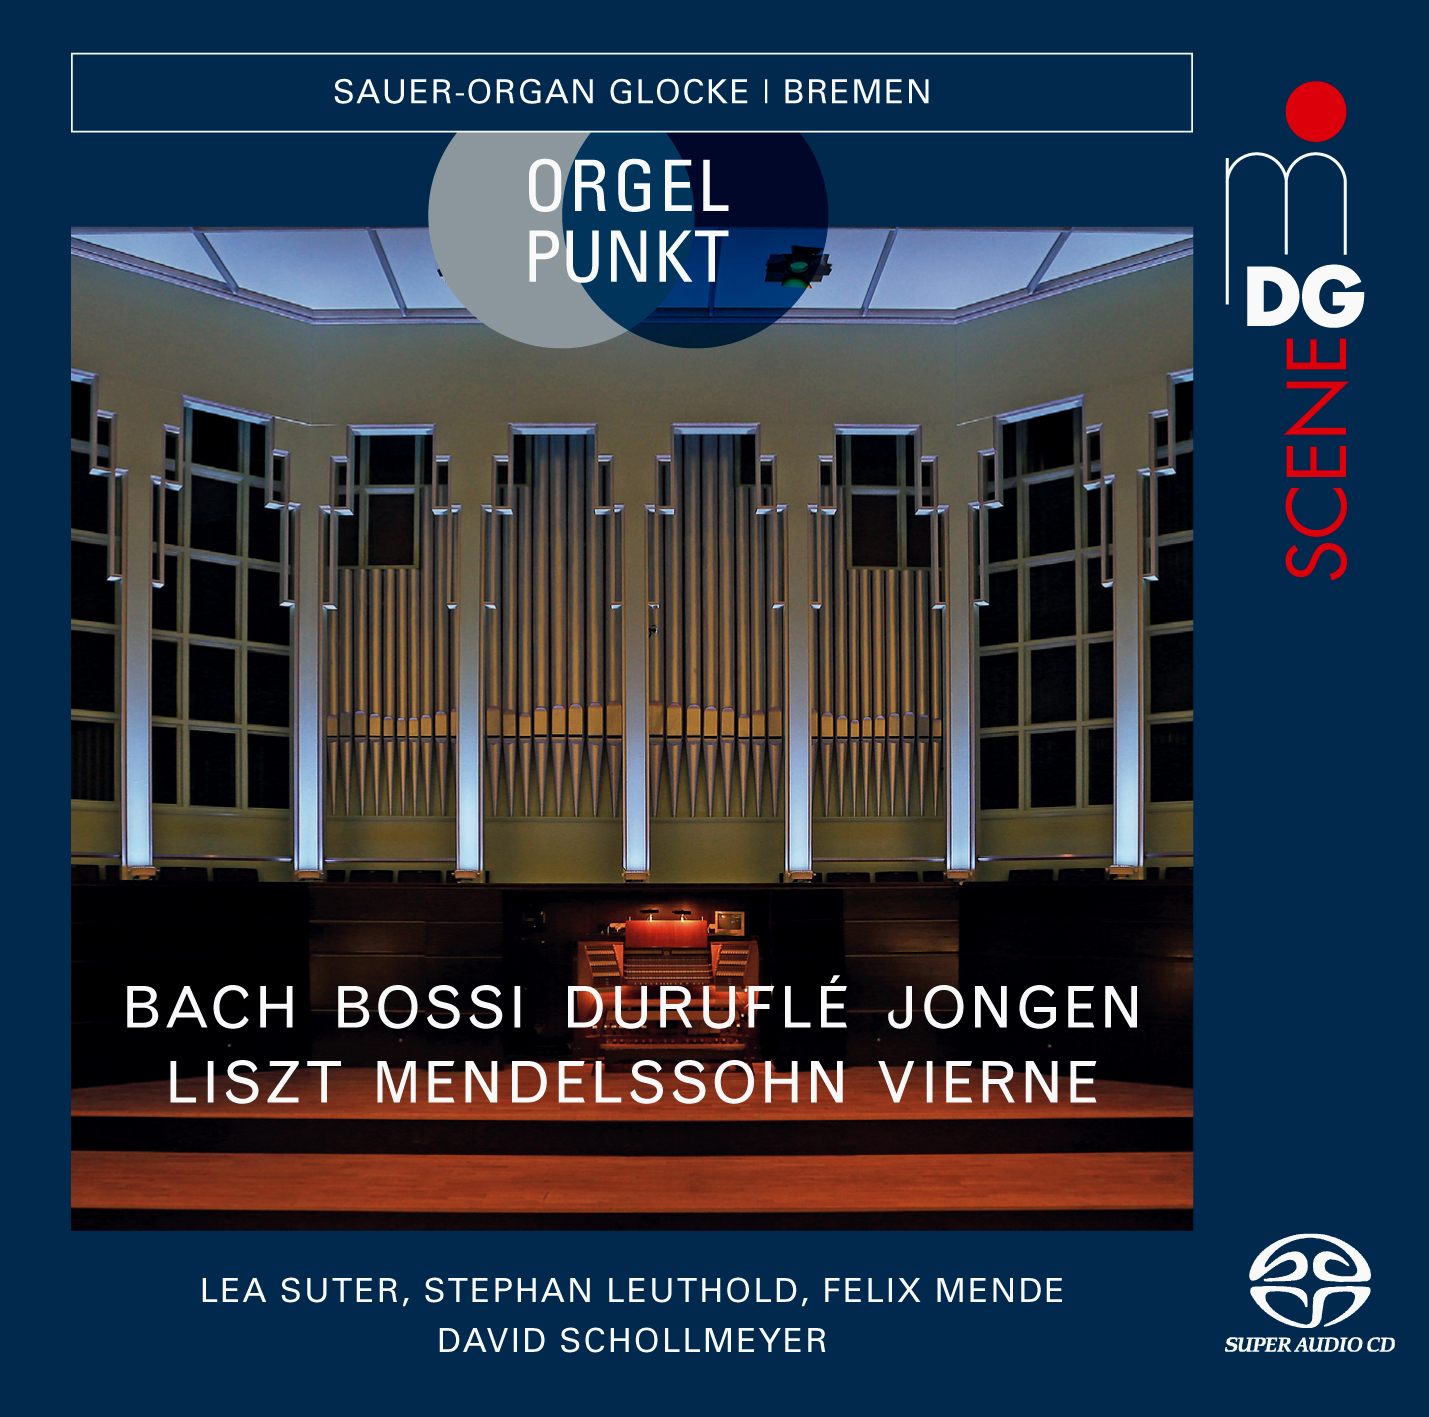 ORGELPUNKT - Bremen Sauer-Organ